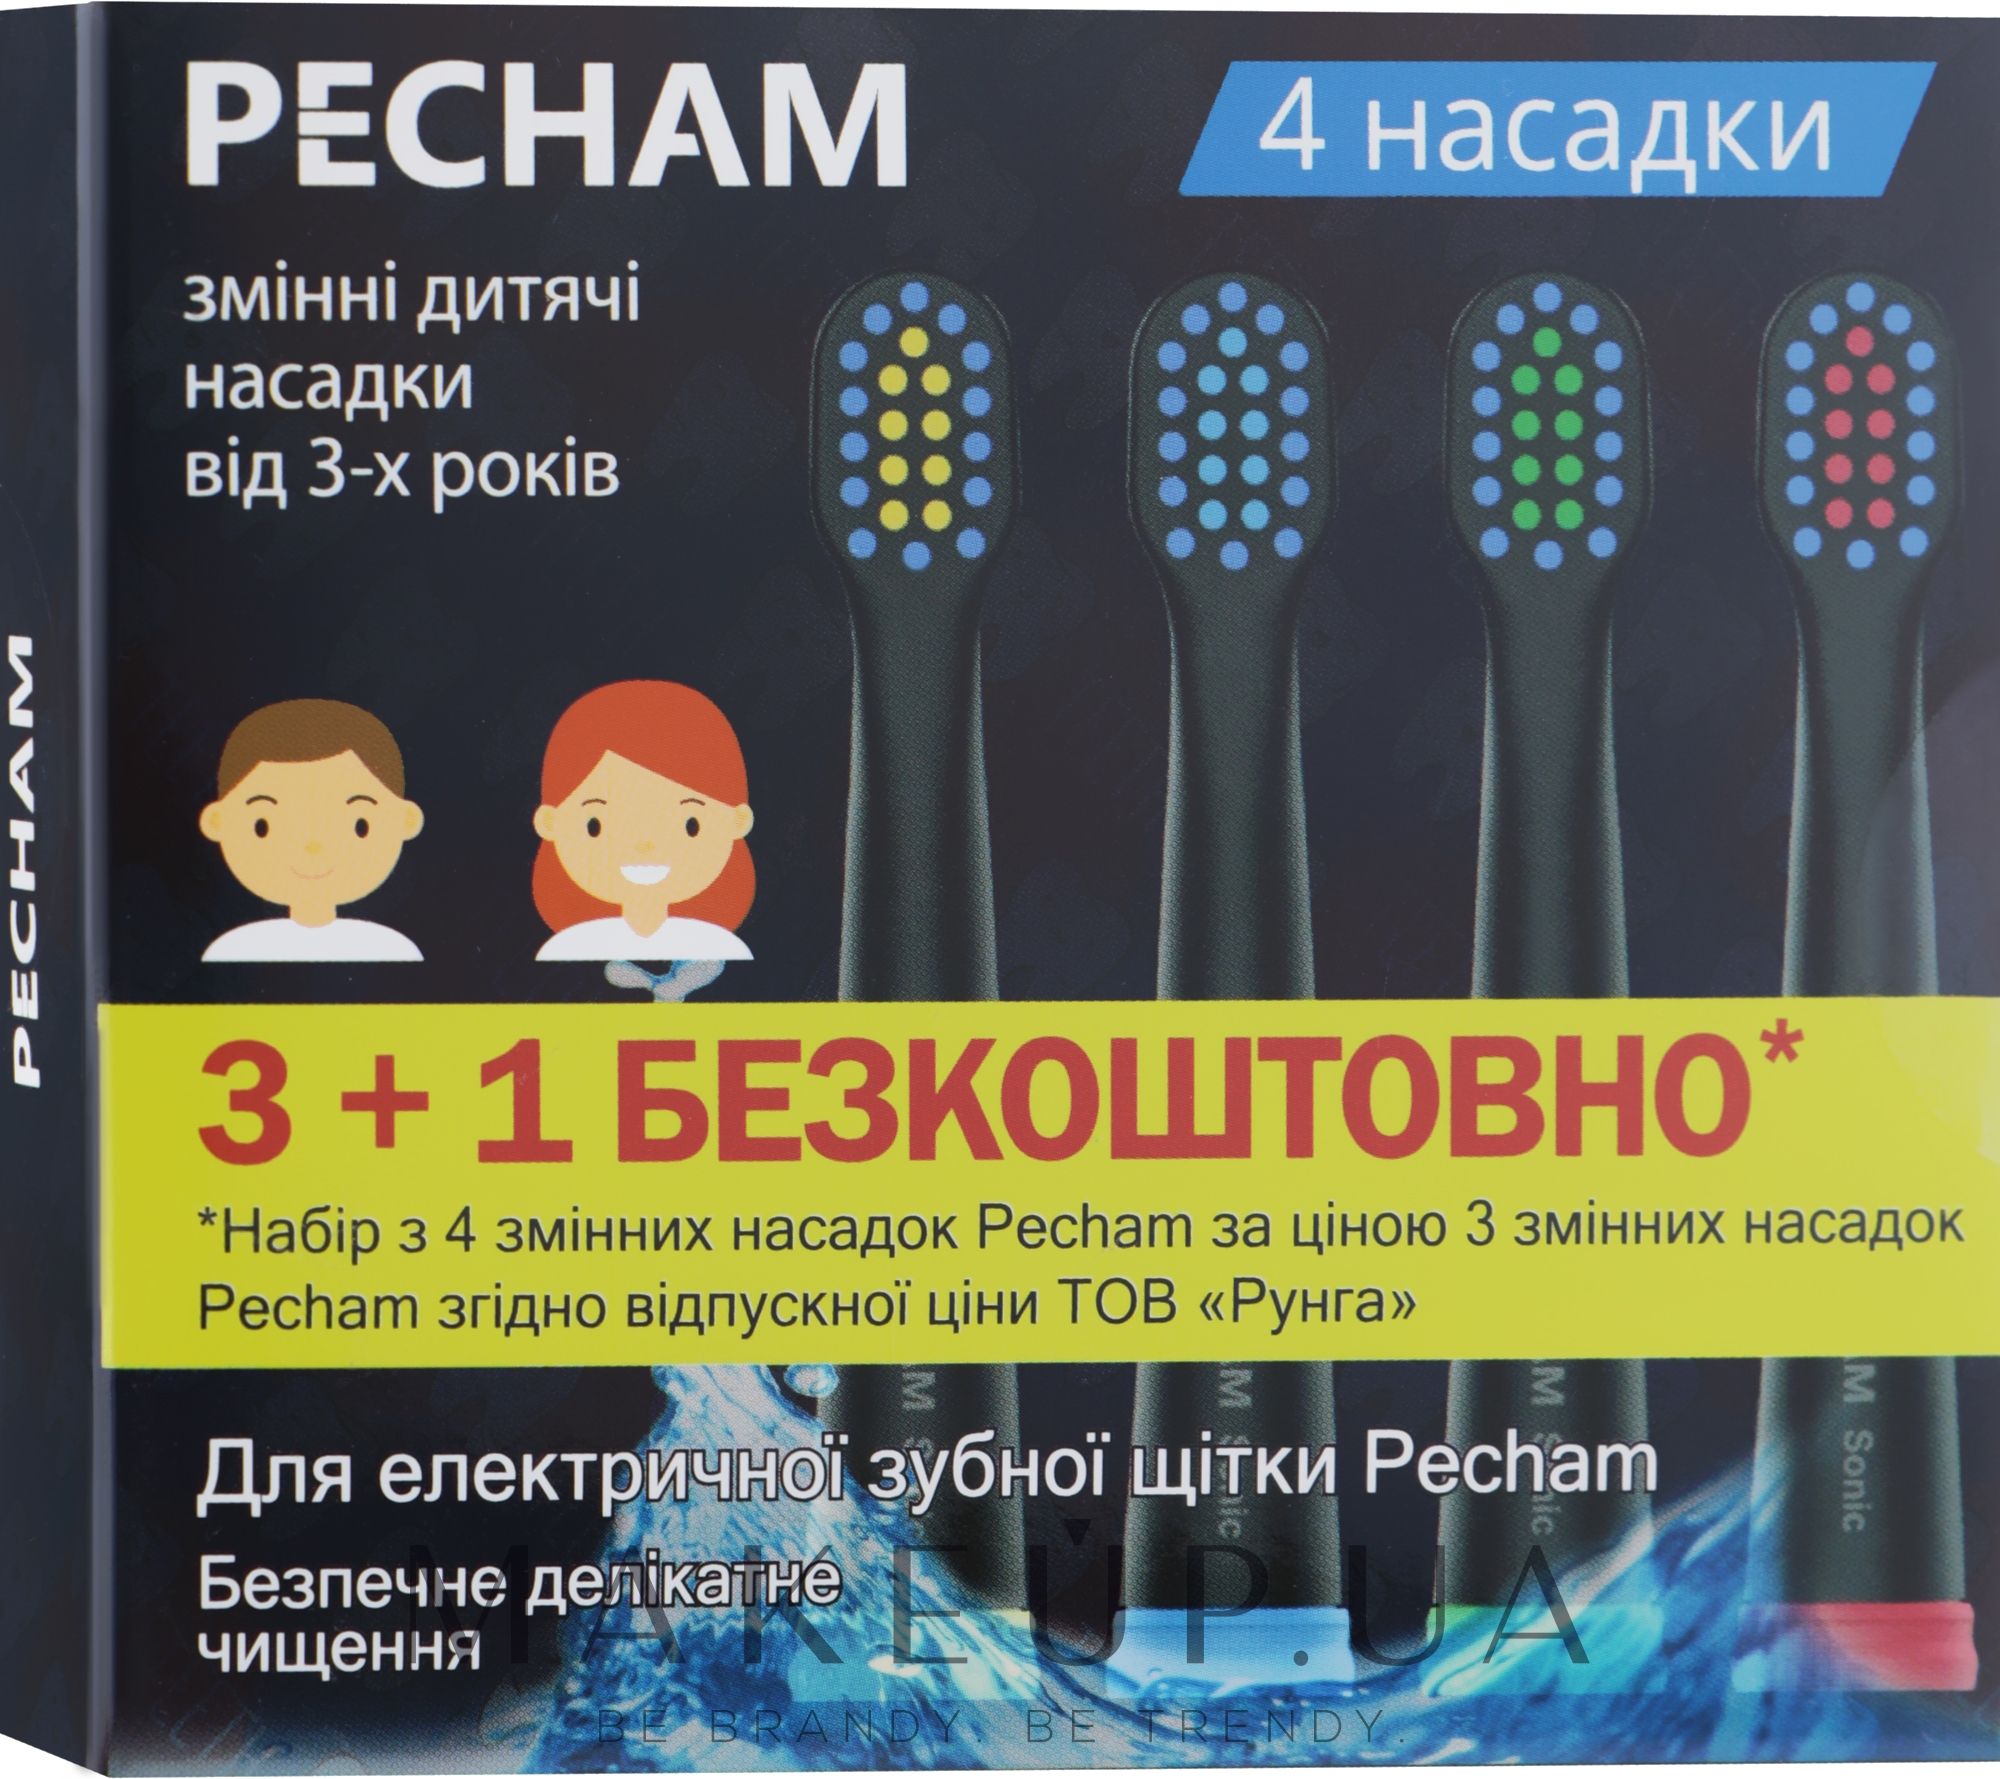 Детские насадки к электрической зубной щетки, черные - Pecham — фото 4шт